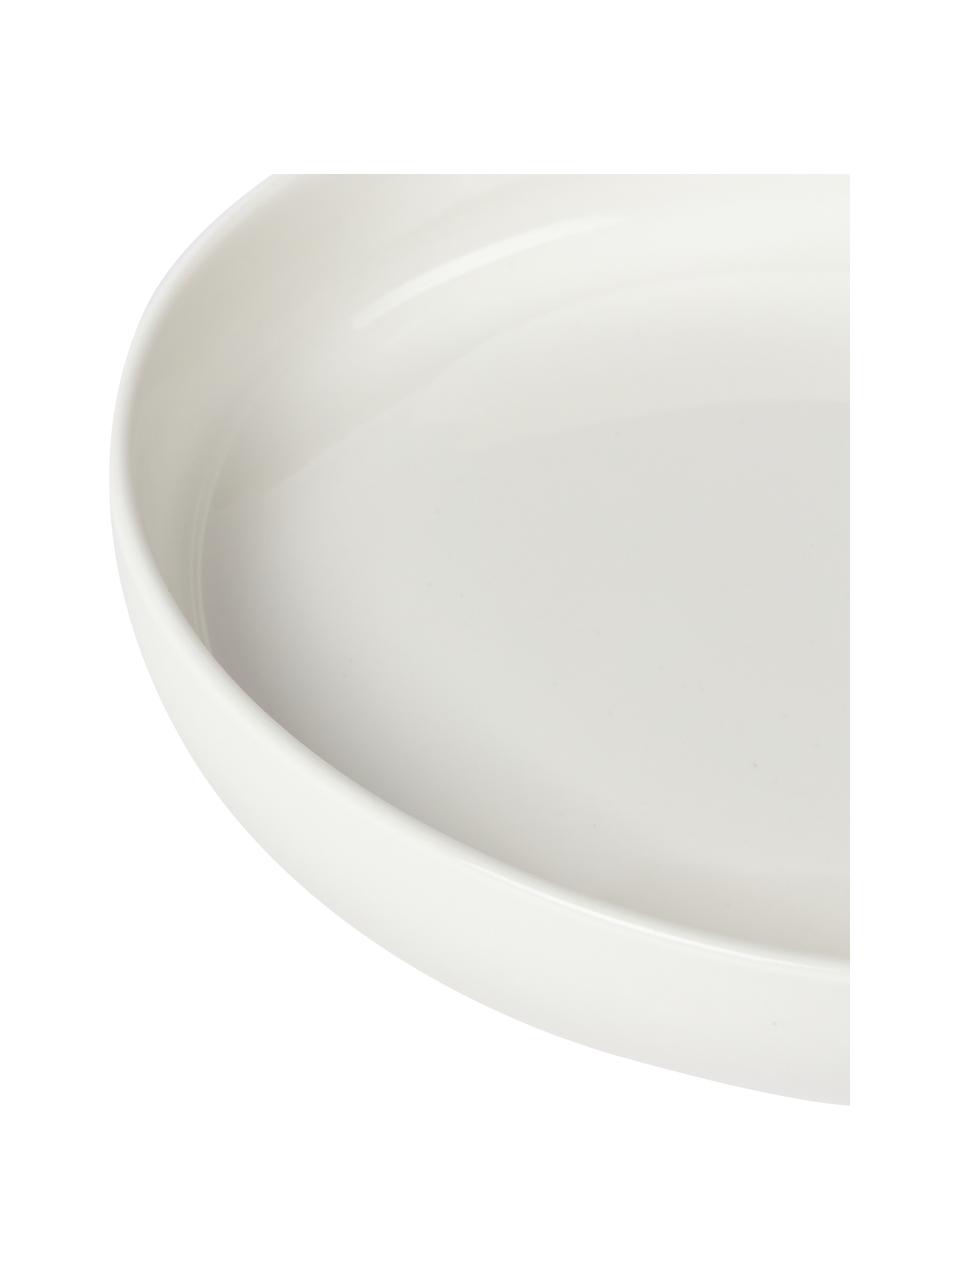 Assiettes à pâtes porcelaine Nessa, 2 pièces, Porcelaine dure de haute qualité, Blanc, Ø 21 cm